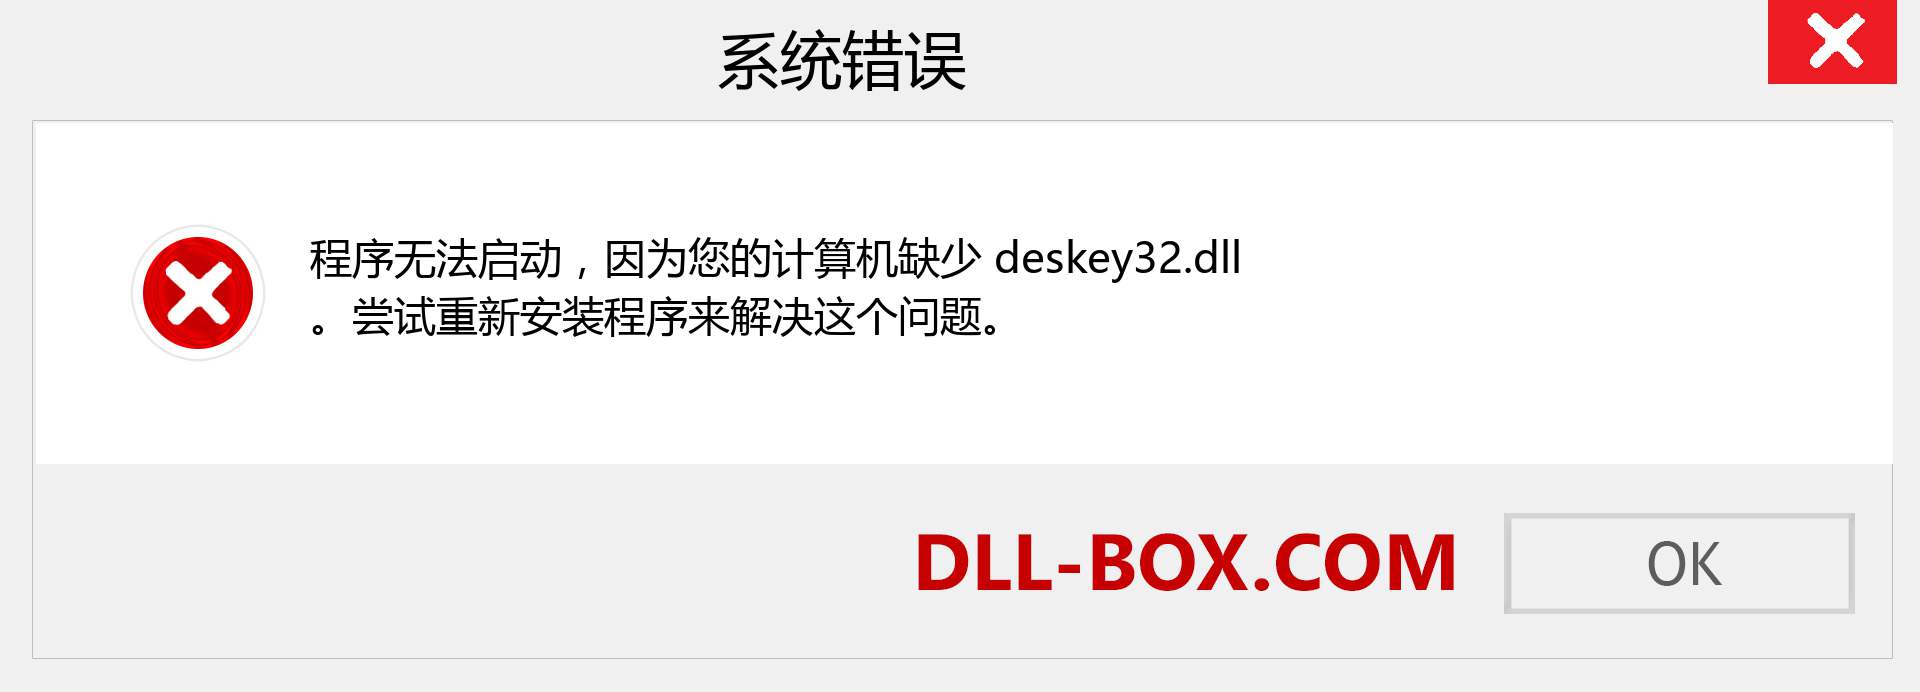 deskey32.dll 文件丢失？。 适用于 Windows 7、8、10 的下载 - 修复 Windows、照片、图像上的 deskey32 dll 丢失错误